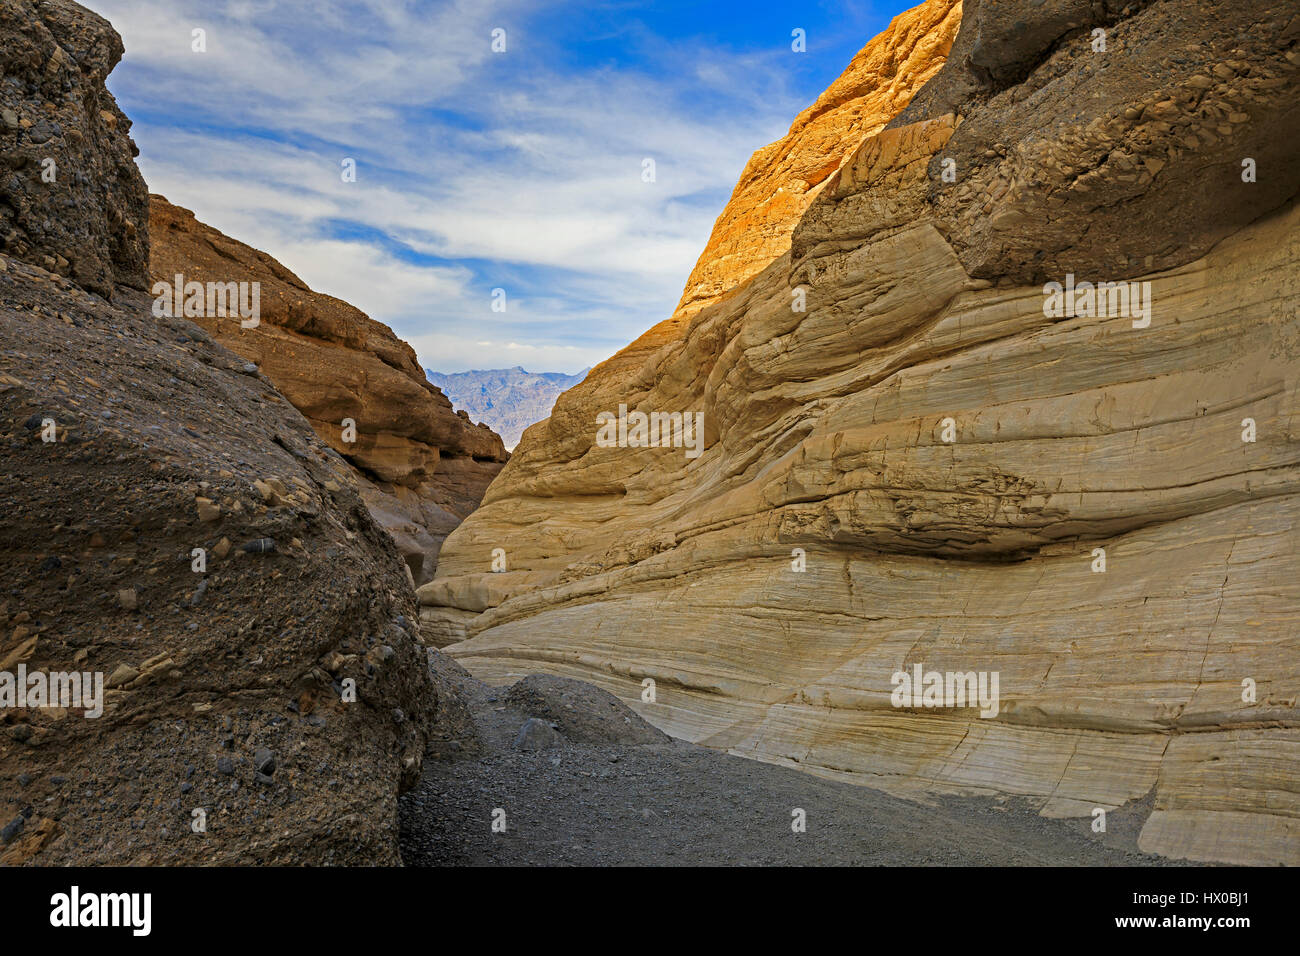 Esta vista mira hacia abajo una ranura a lo largo del sendero en mosaico de cañón del Parque Nacional Valle de la Muerte, California, Estados Unidos. Esta vista muestra el mármol en el cañón. Foto de stock